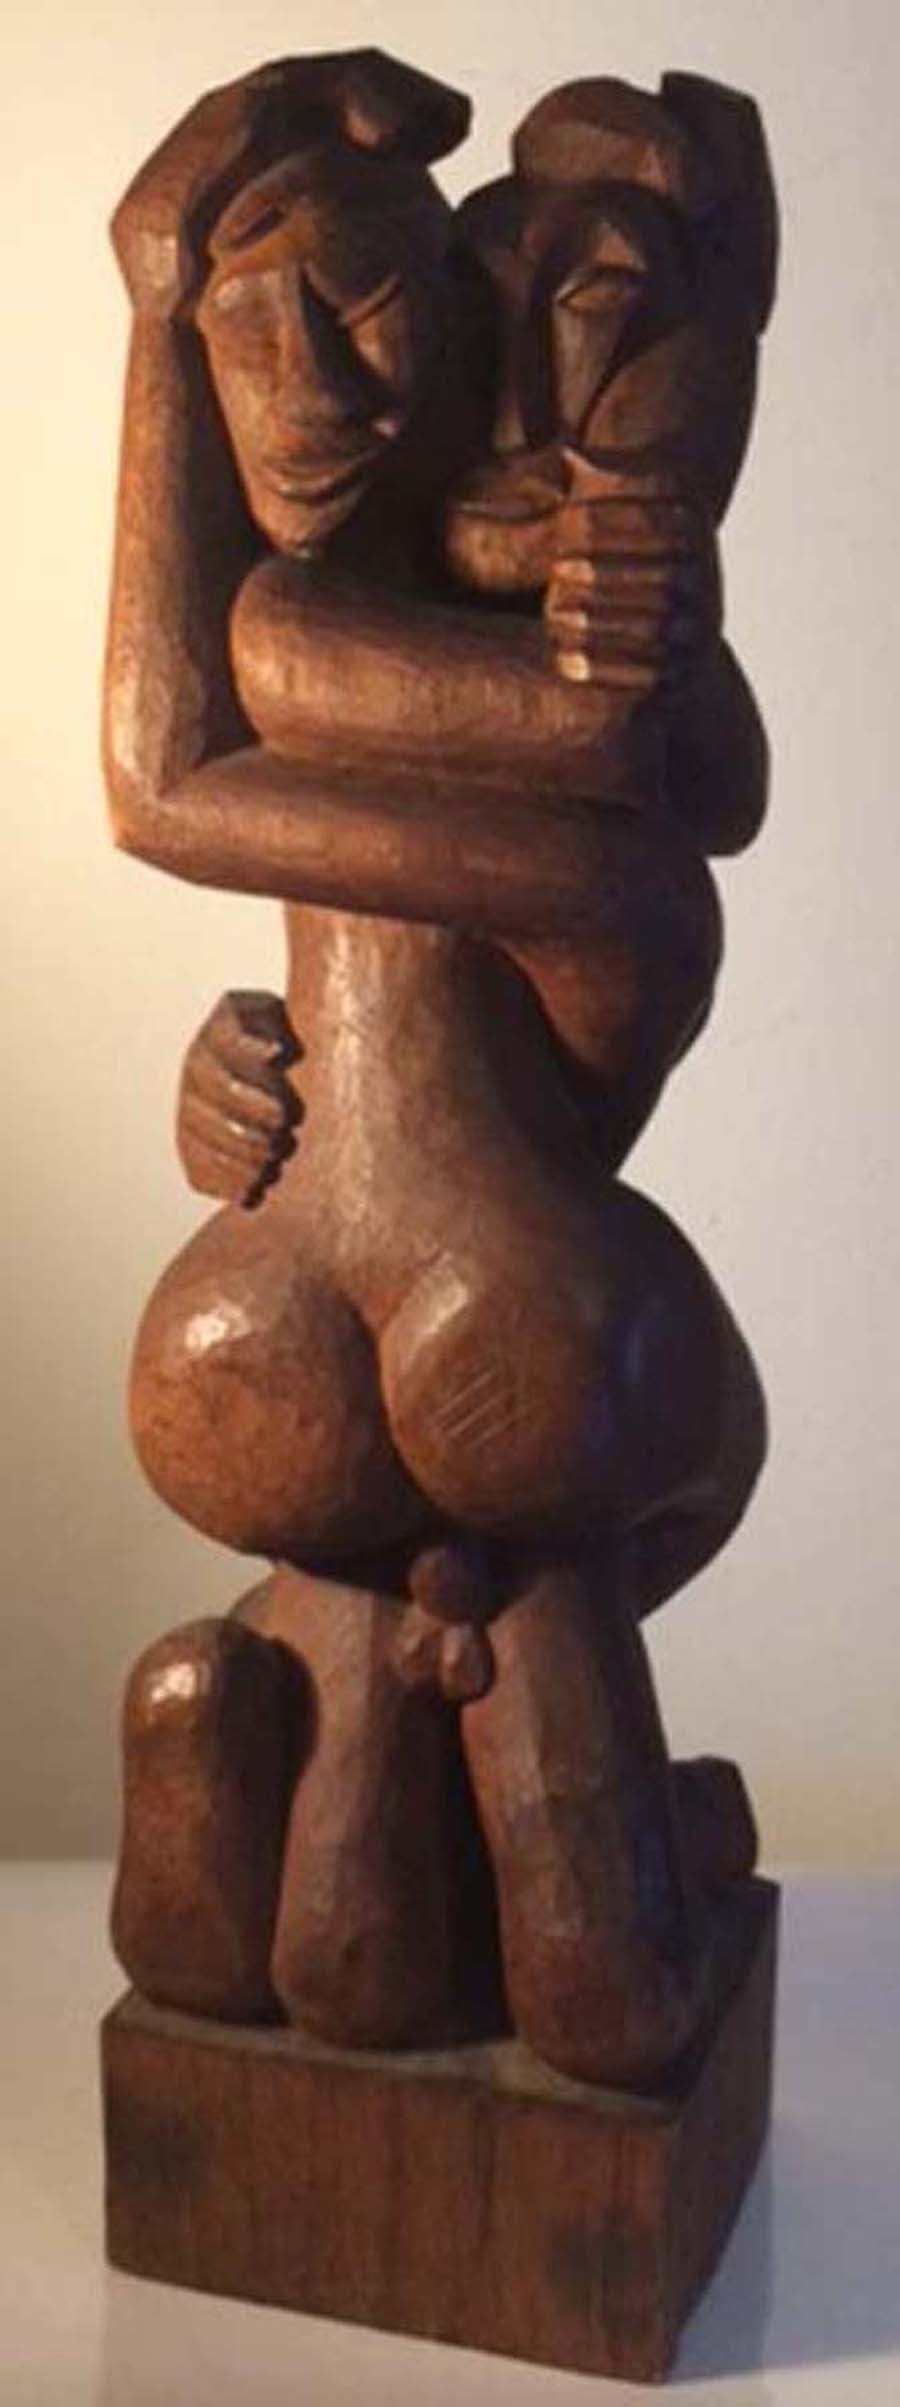 Erotica - Sculpture by Osmon 